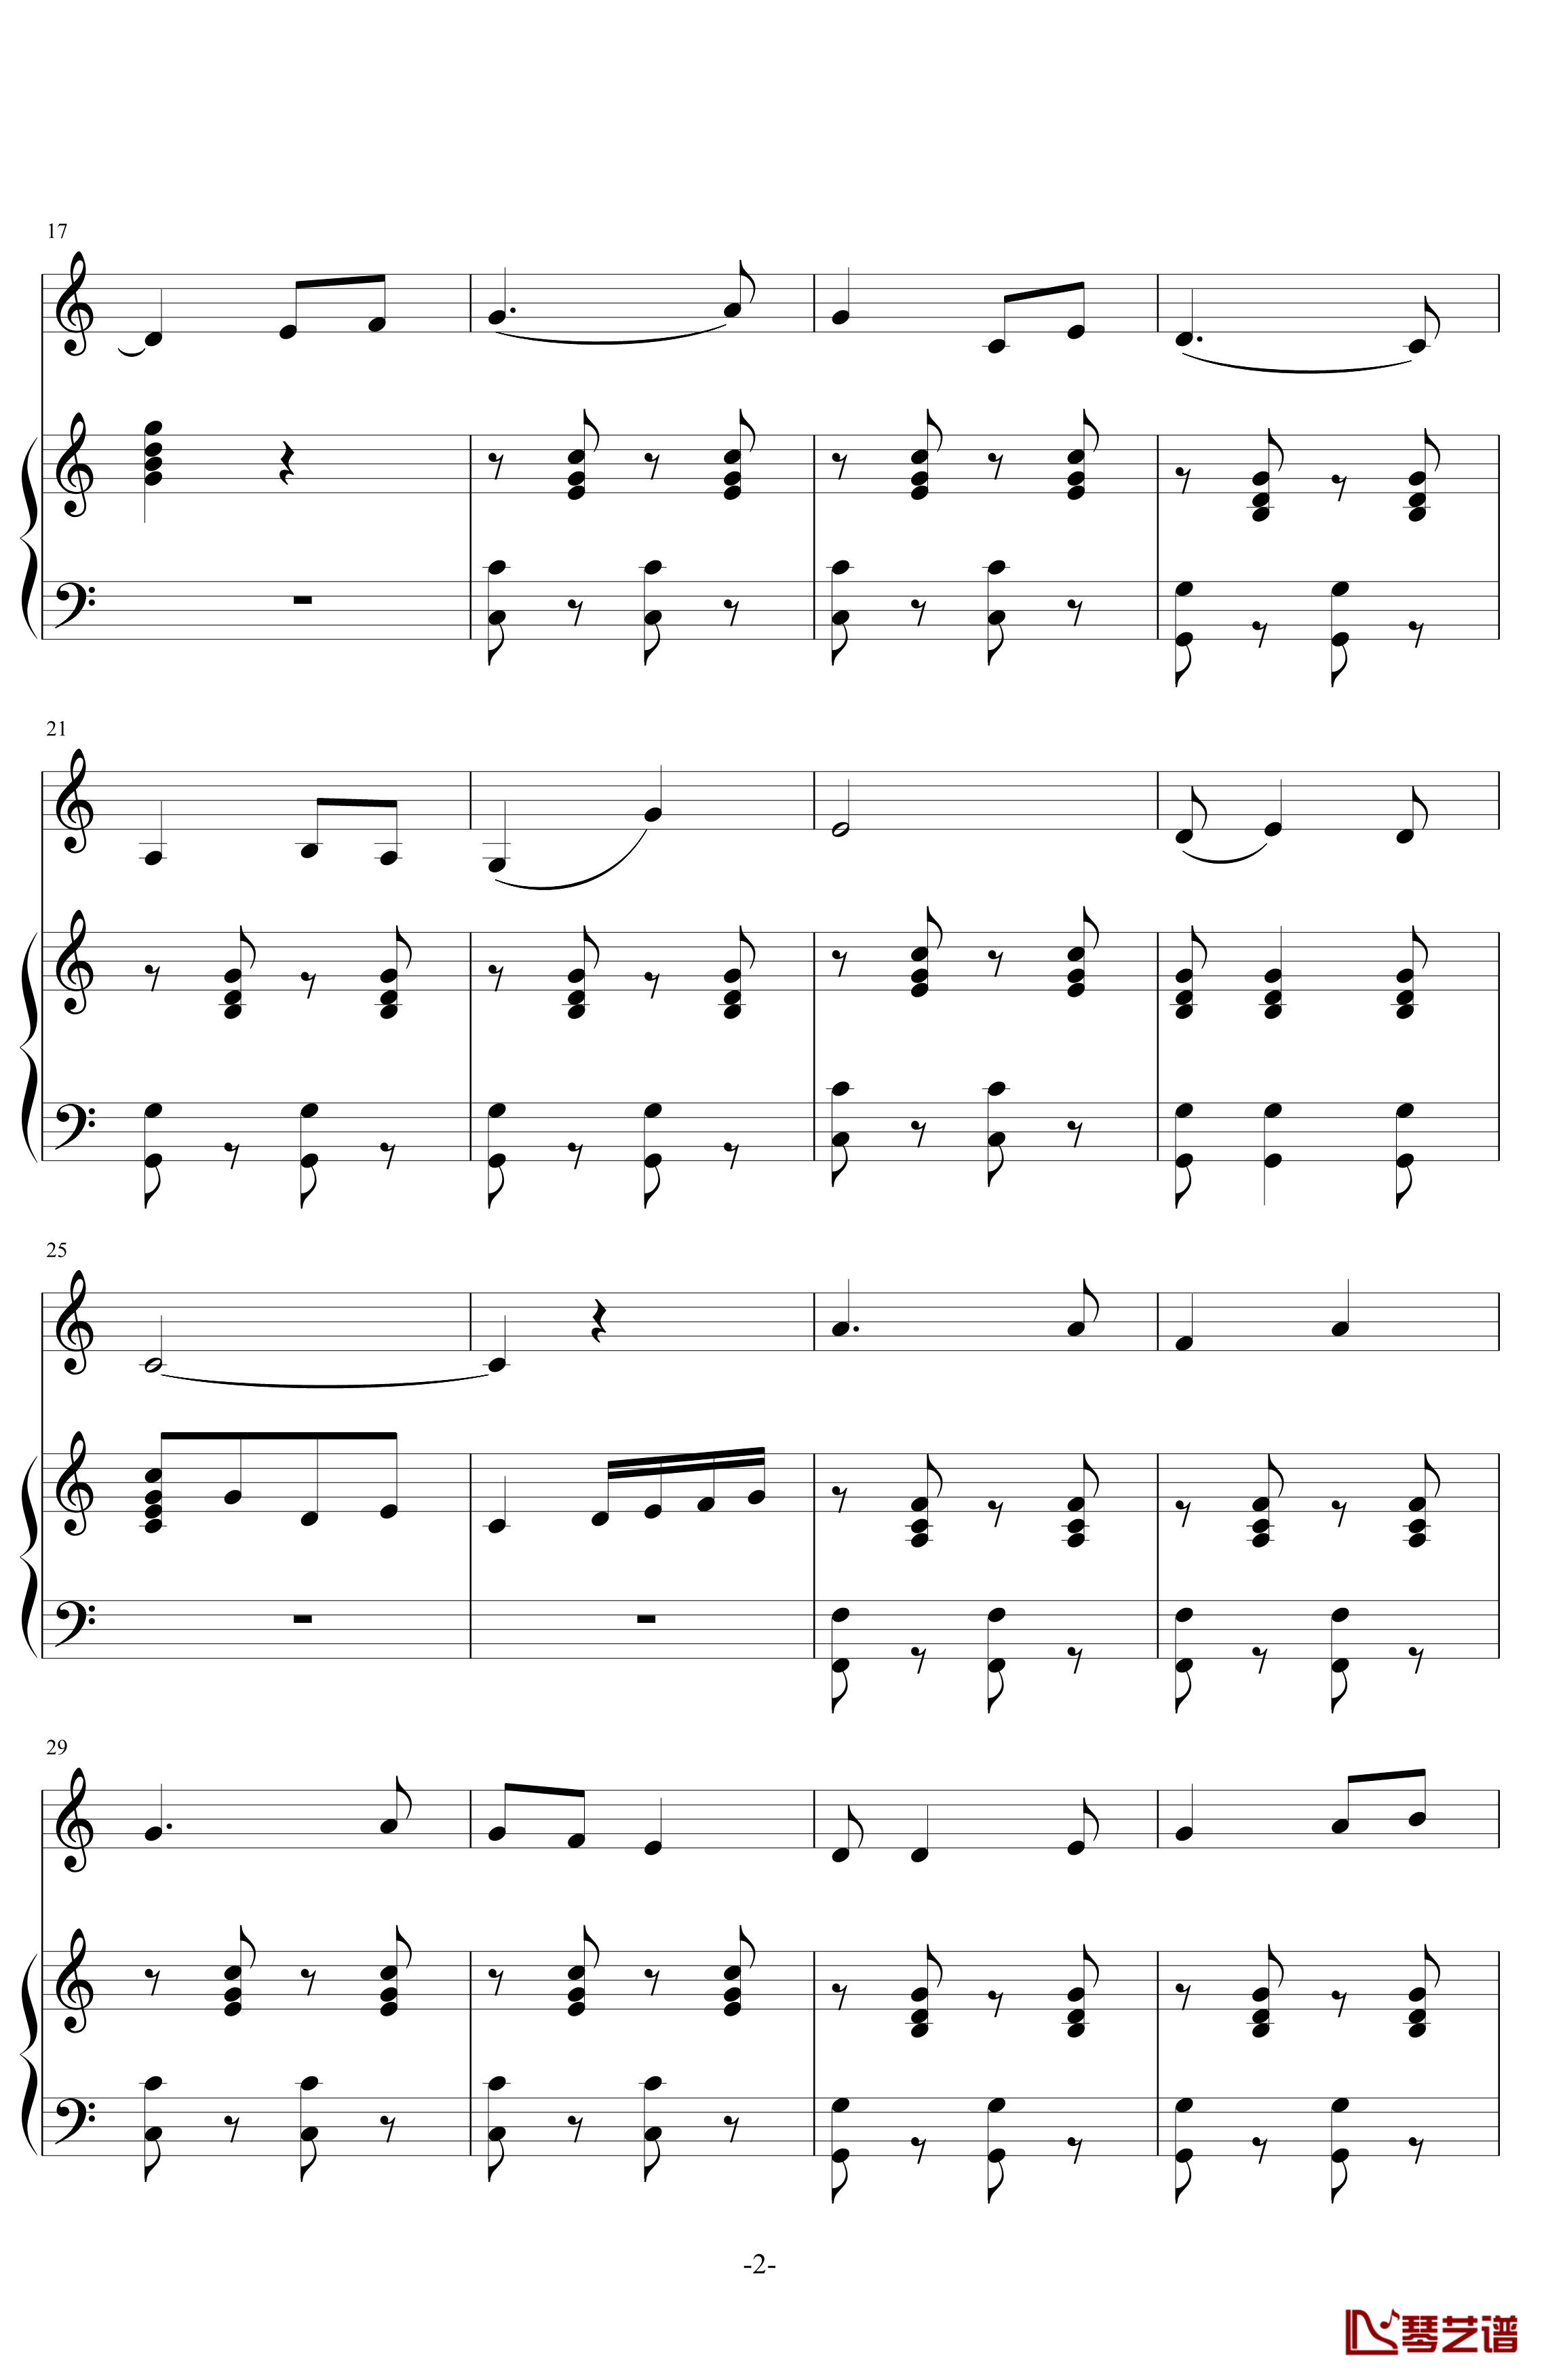 广东实验中学校歌钢琴谱-中国名曲2